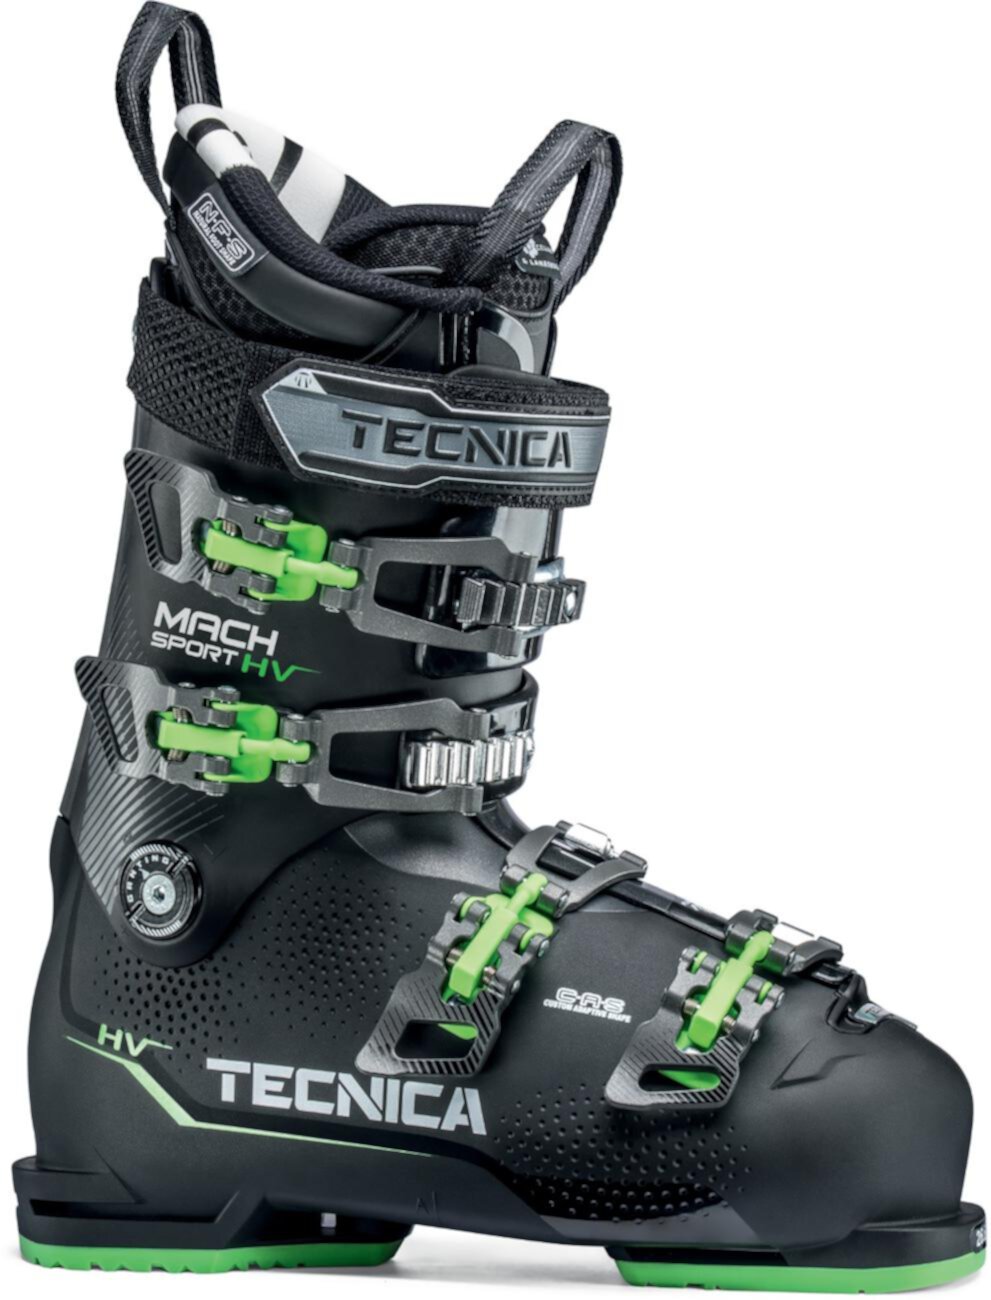 Лыжные ботинки Mach Sport EHV 120 - Мужские - 2018/2019 Tecnica